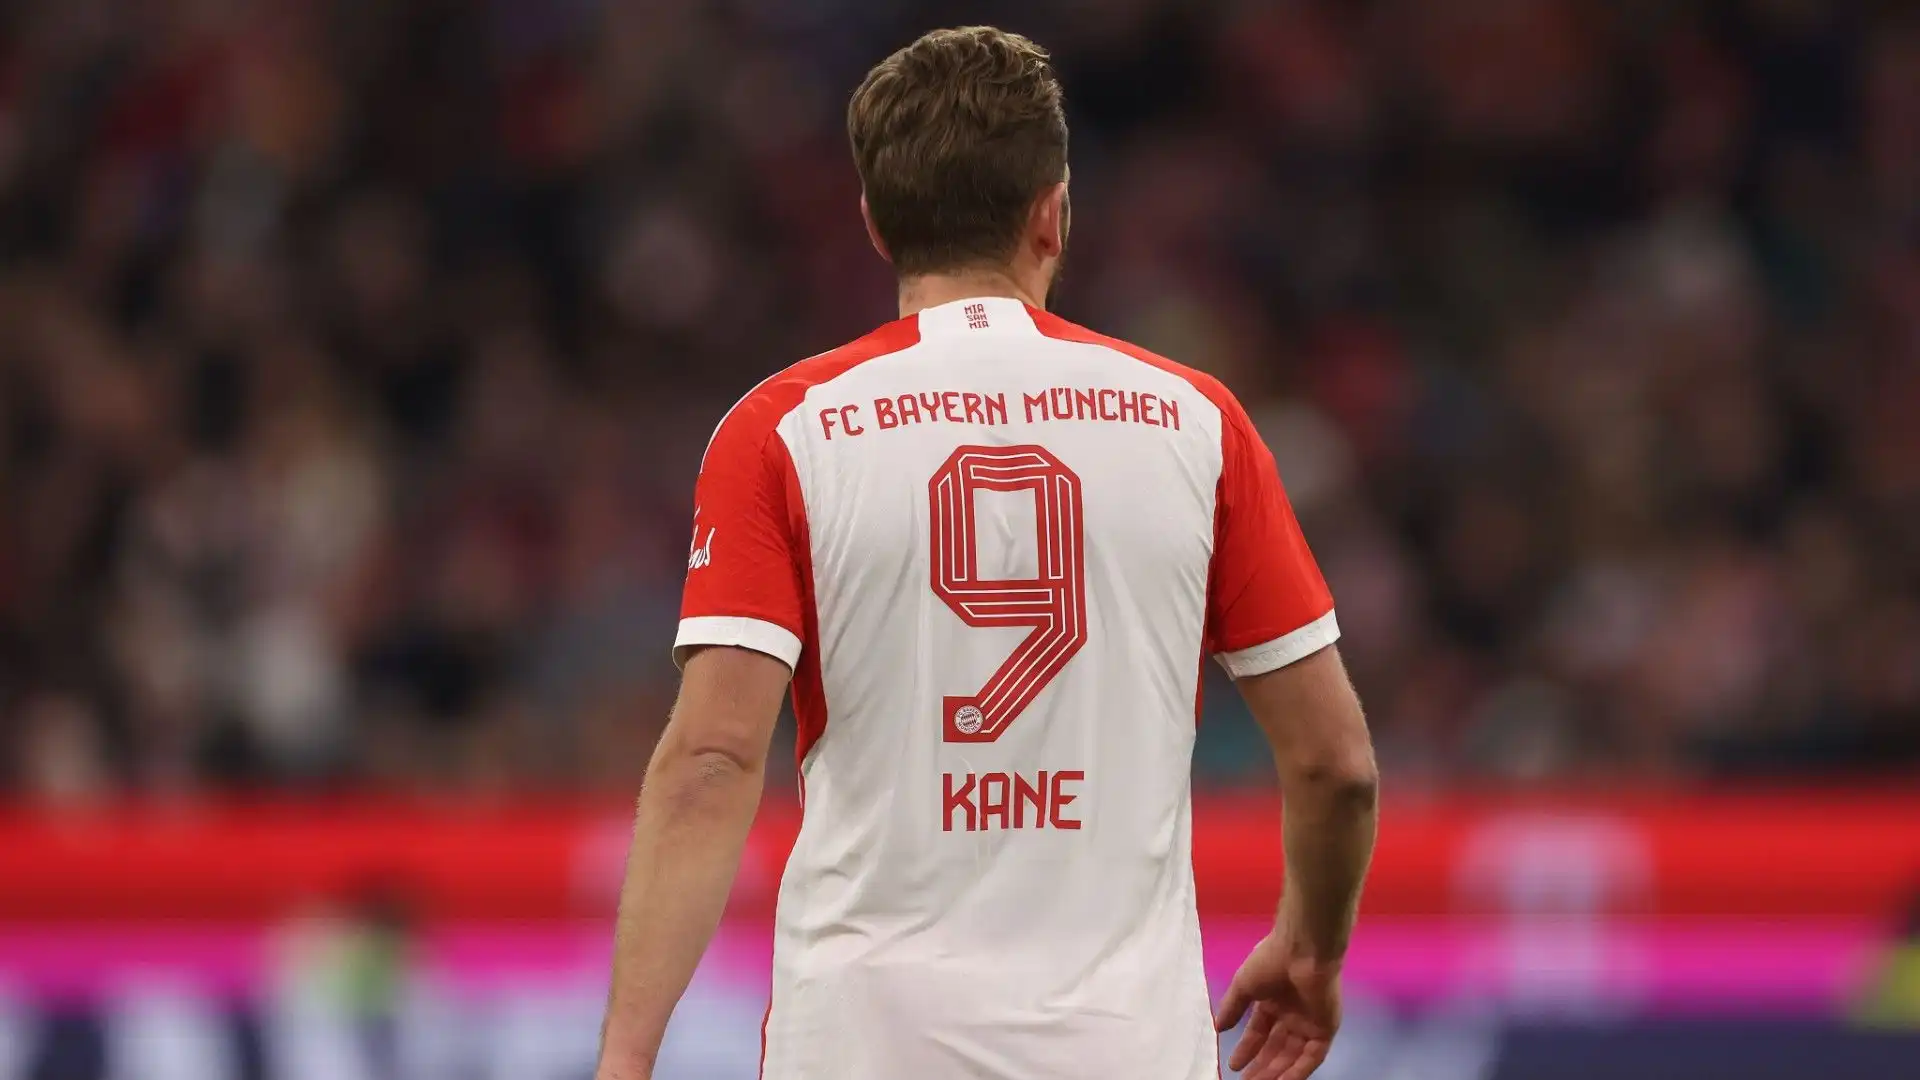 L'attaccante inglese sta disputando una super stagione al Bayern Monaco